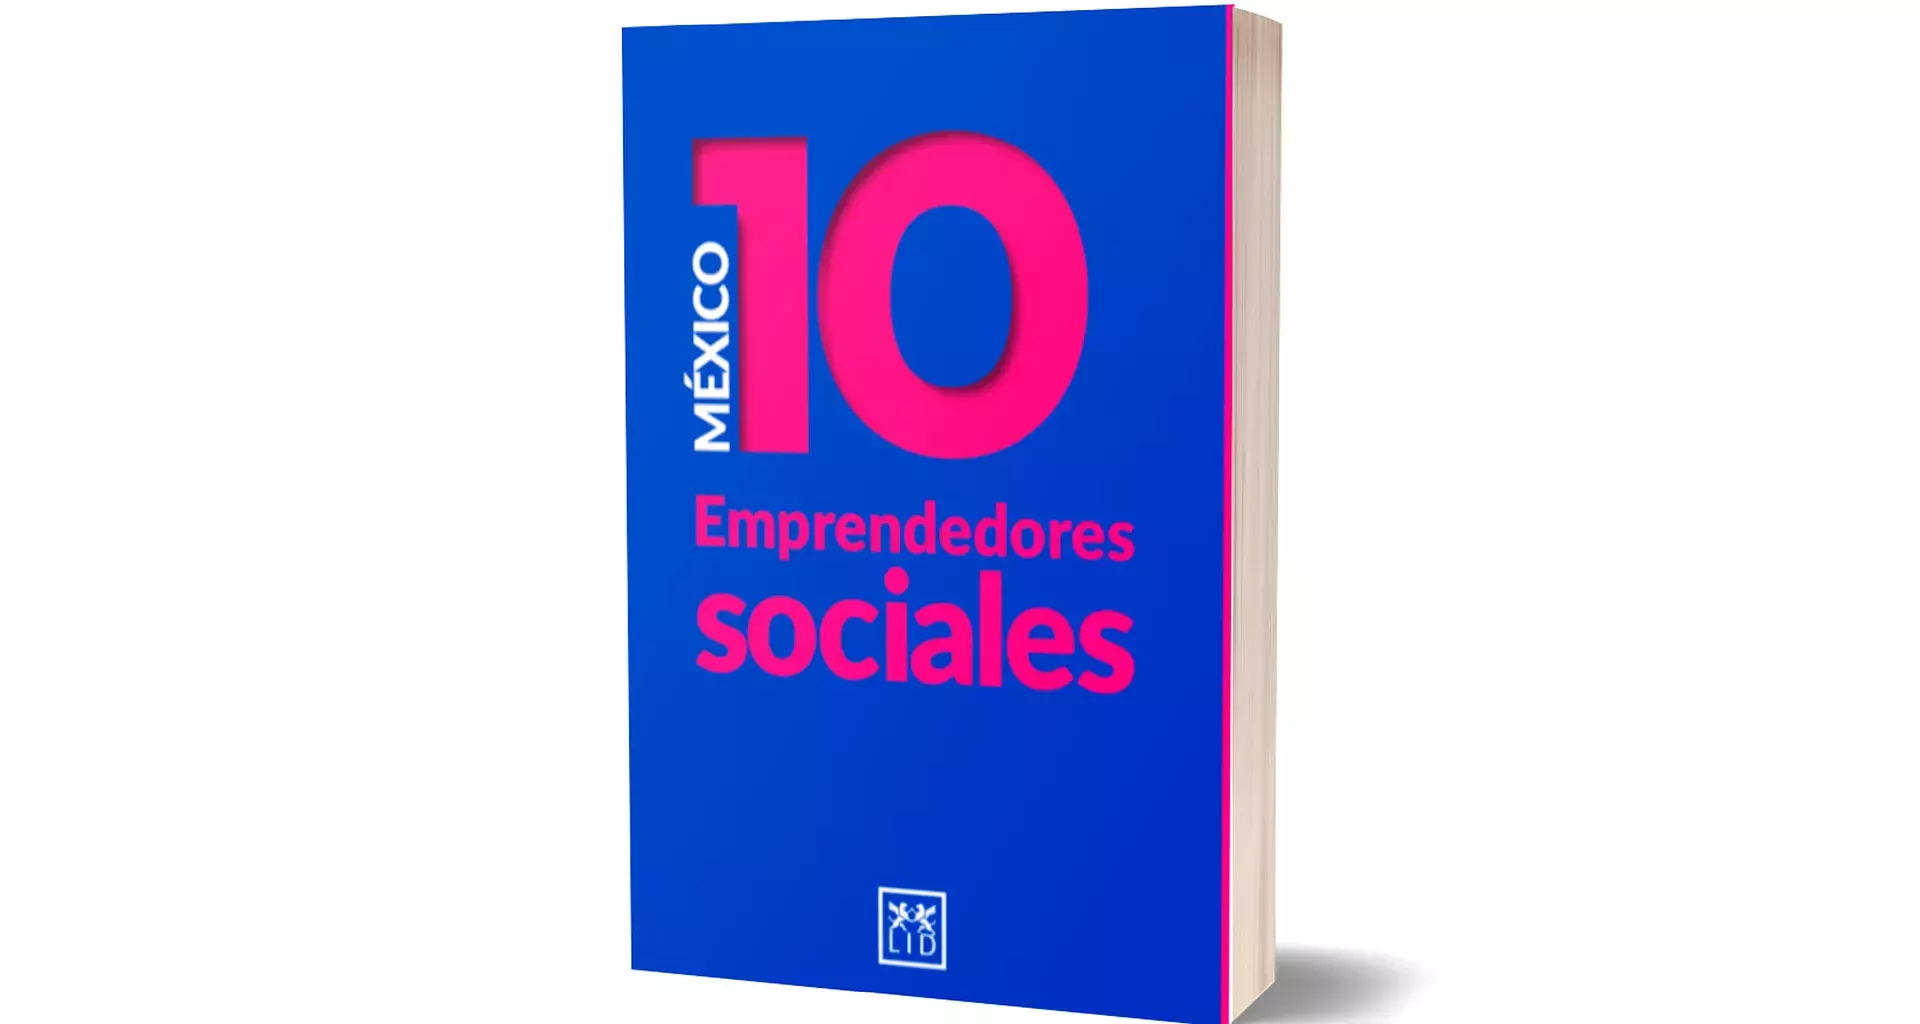 Su unen para lanzar libro de 10 casos de empresas sociales mexicanas